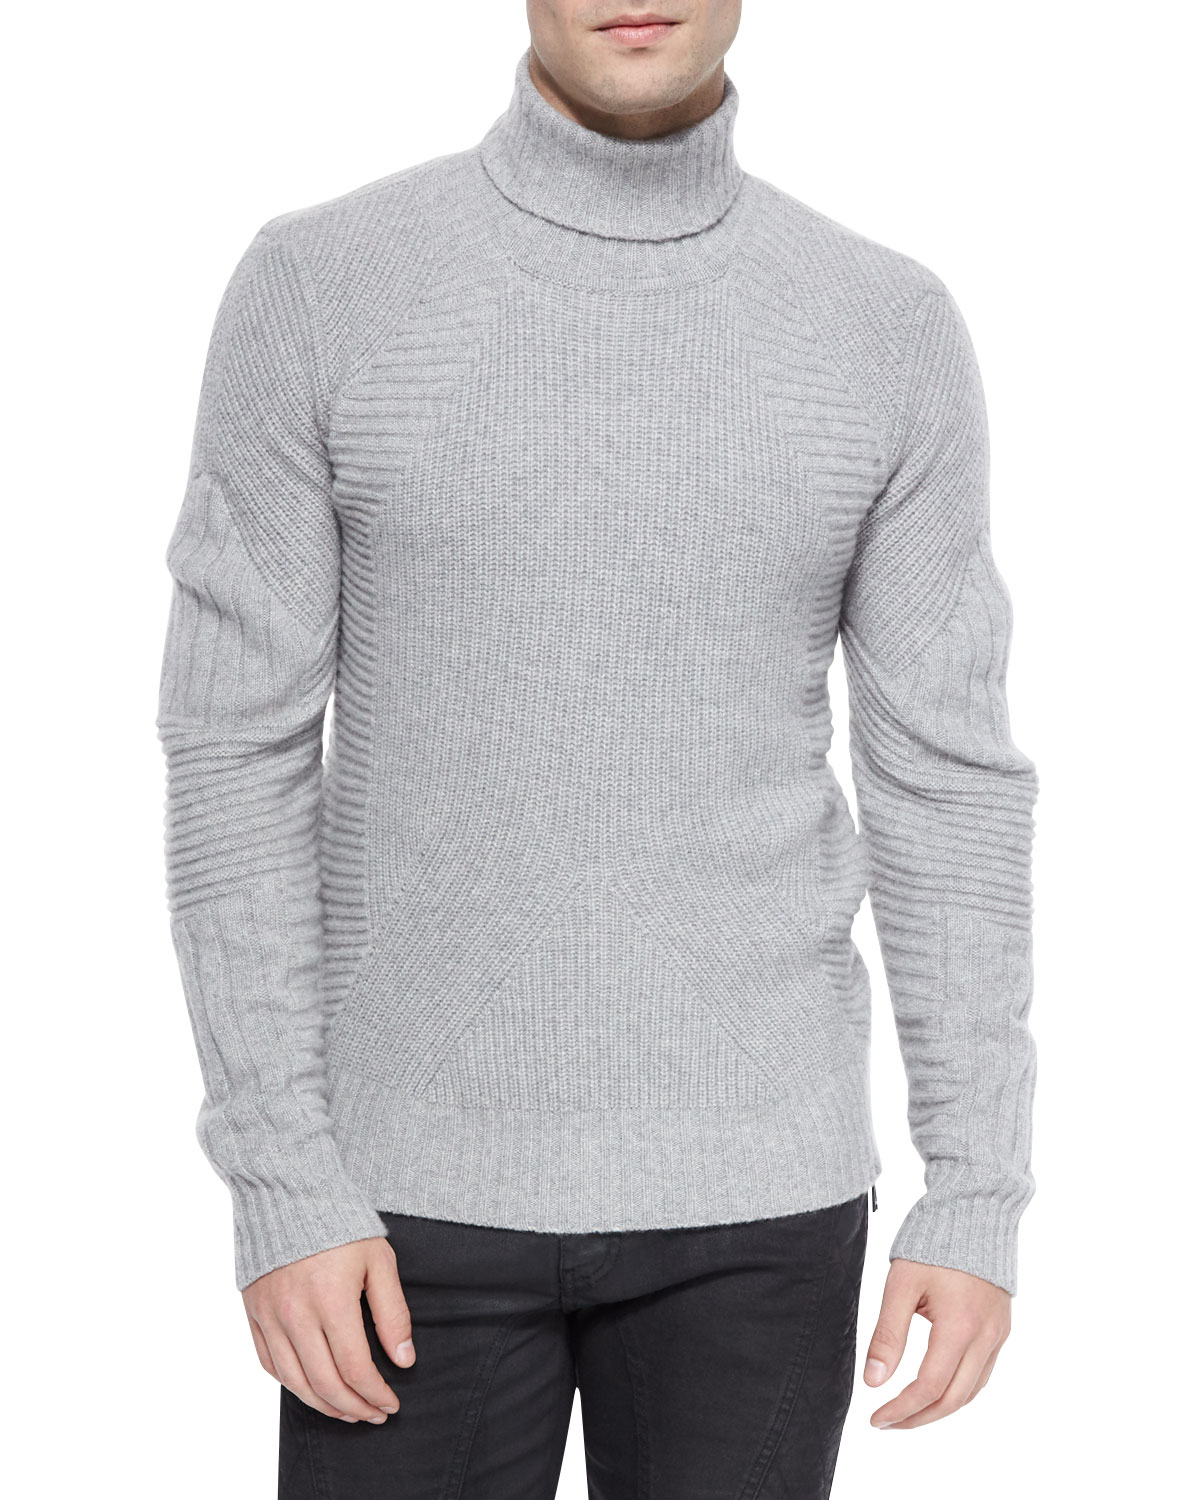 Belstaff Cashmere Littlehurst Textured Knit Sweater in Gray for Men - Lyst